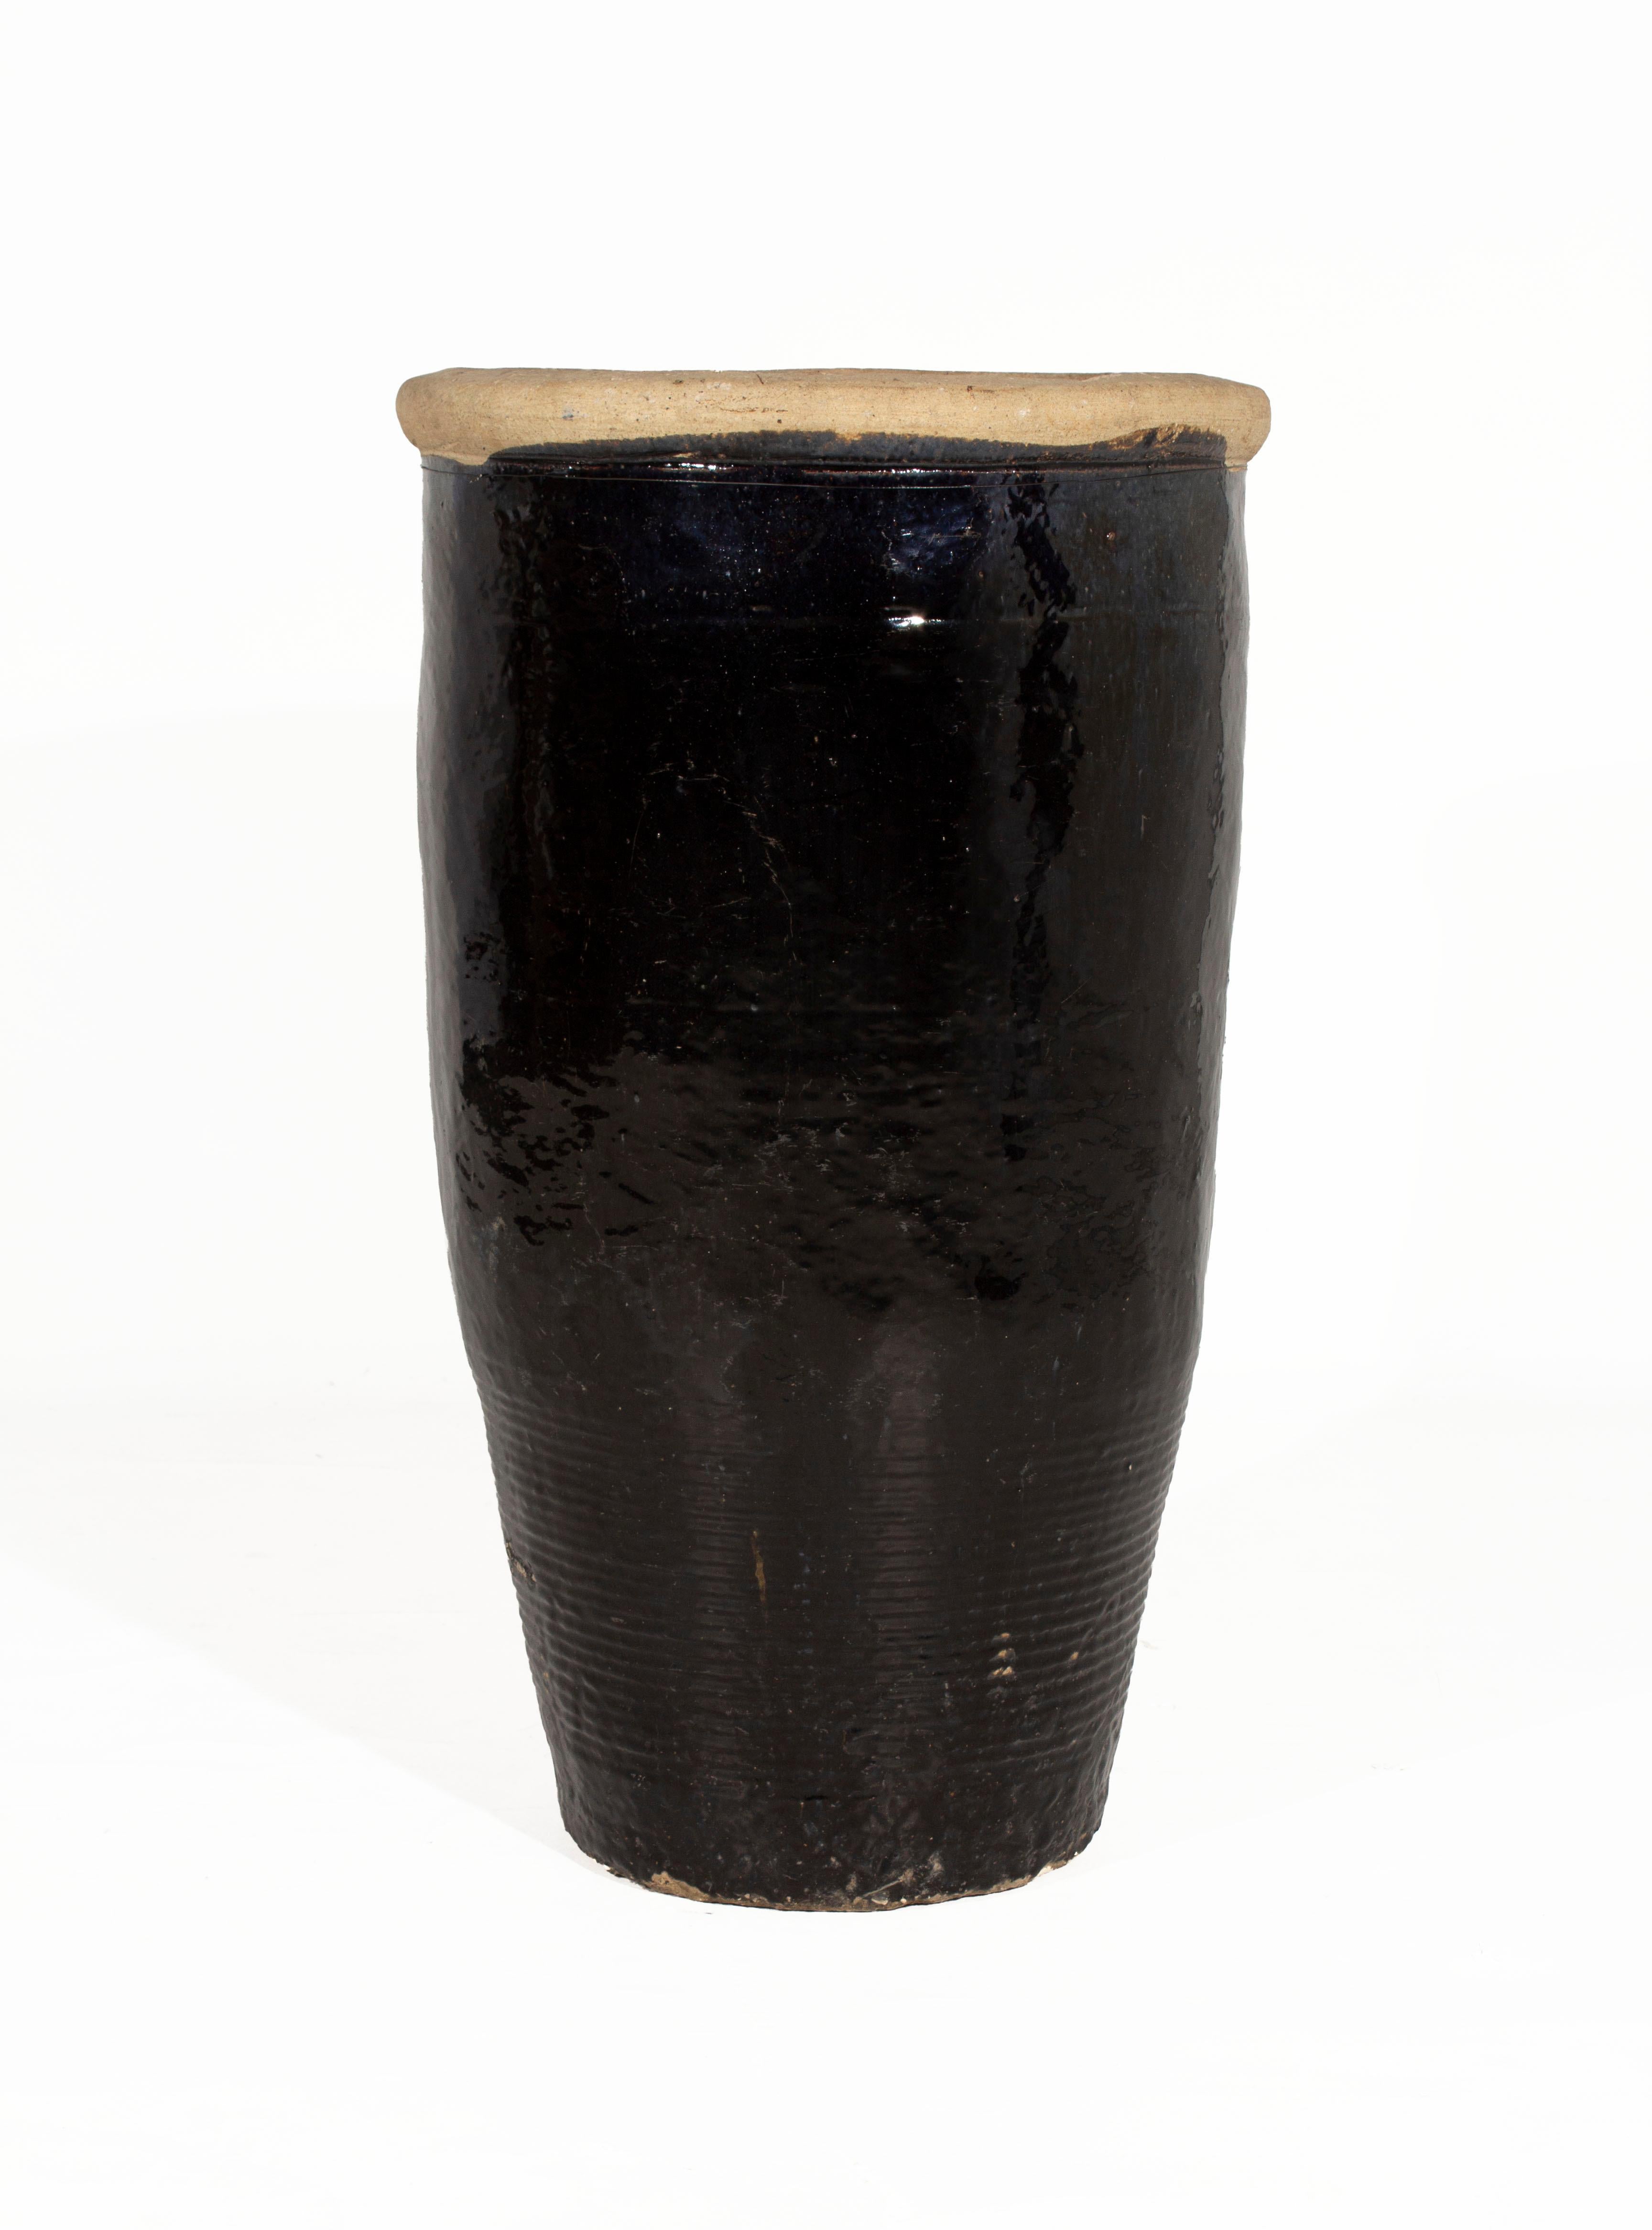 Vintage South Asian Storage Jar / Pot ceramic decor.

Dans mon esthétique organique, contemporaine, vintage et moderne du milieu du siècle.

Acheté en Belgique par Brendan Bass. Exemplaire unique.